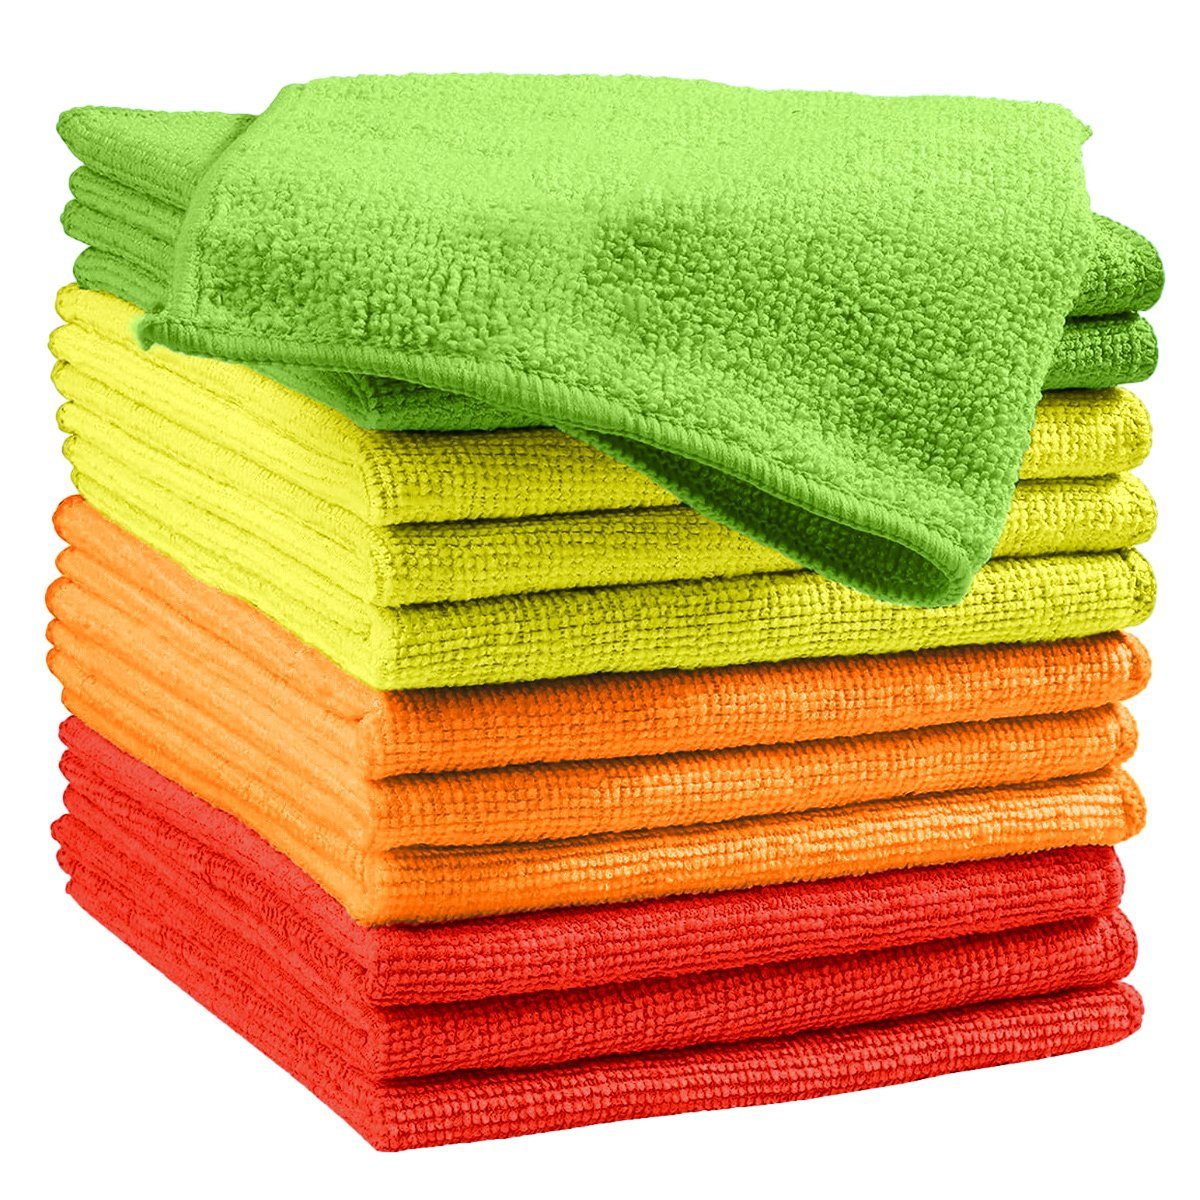 [Sonderangebot] Questive Mikrofaser-Reinigungstuch12 Stück Reinigungstücher, Reinigungstücher Rot,Gelb,Grün,Orange Reinigungstücher